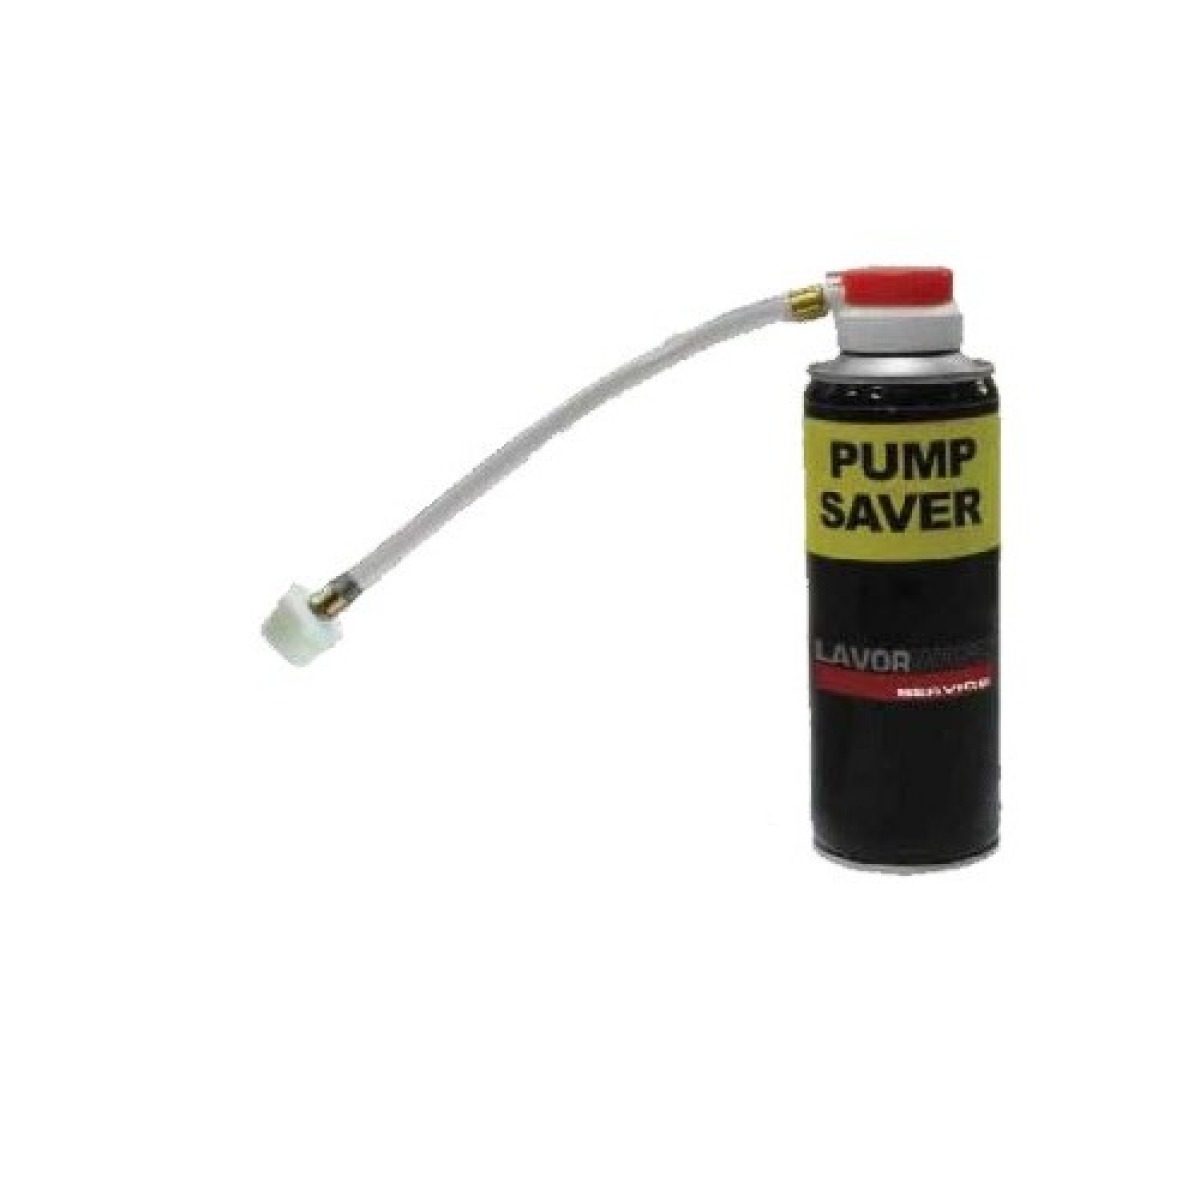 (GP 12,43 € / 100 ml) Servicespray KIT für Hochdruckpumpe Pumpenschutz Saver